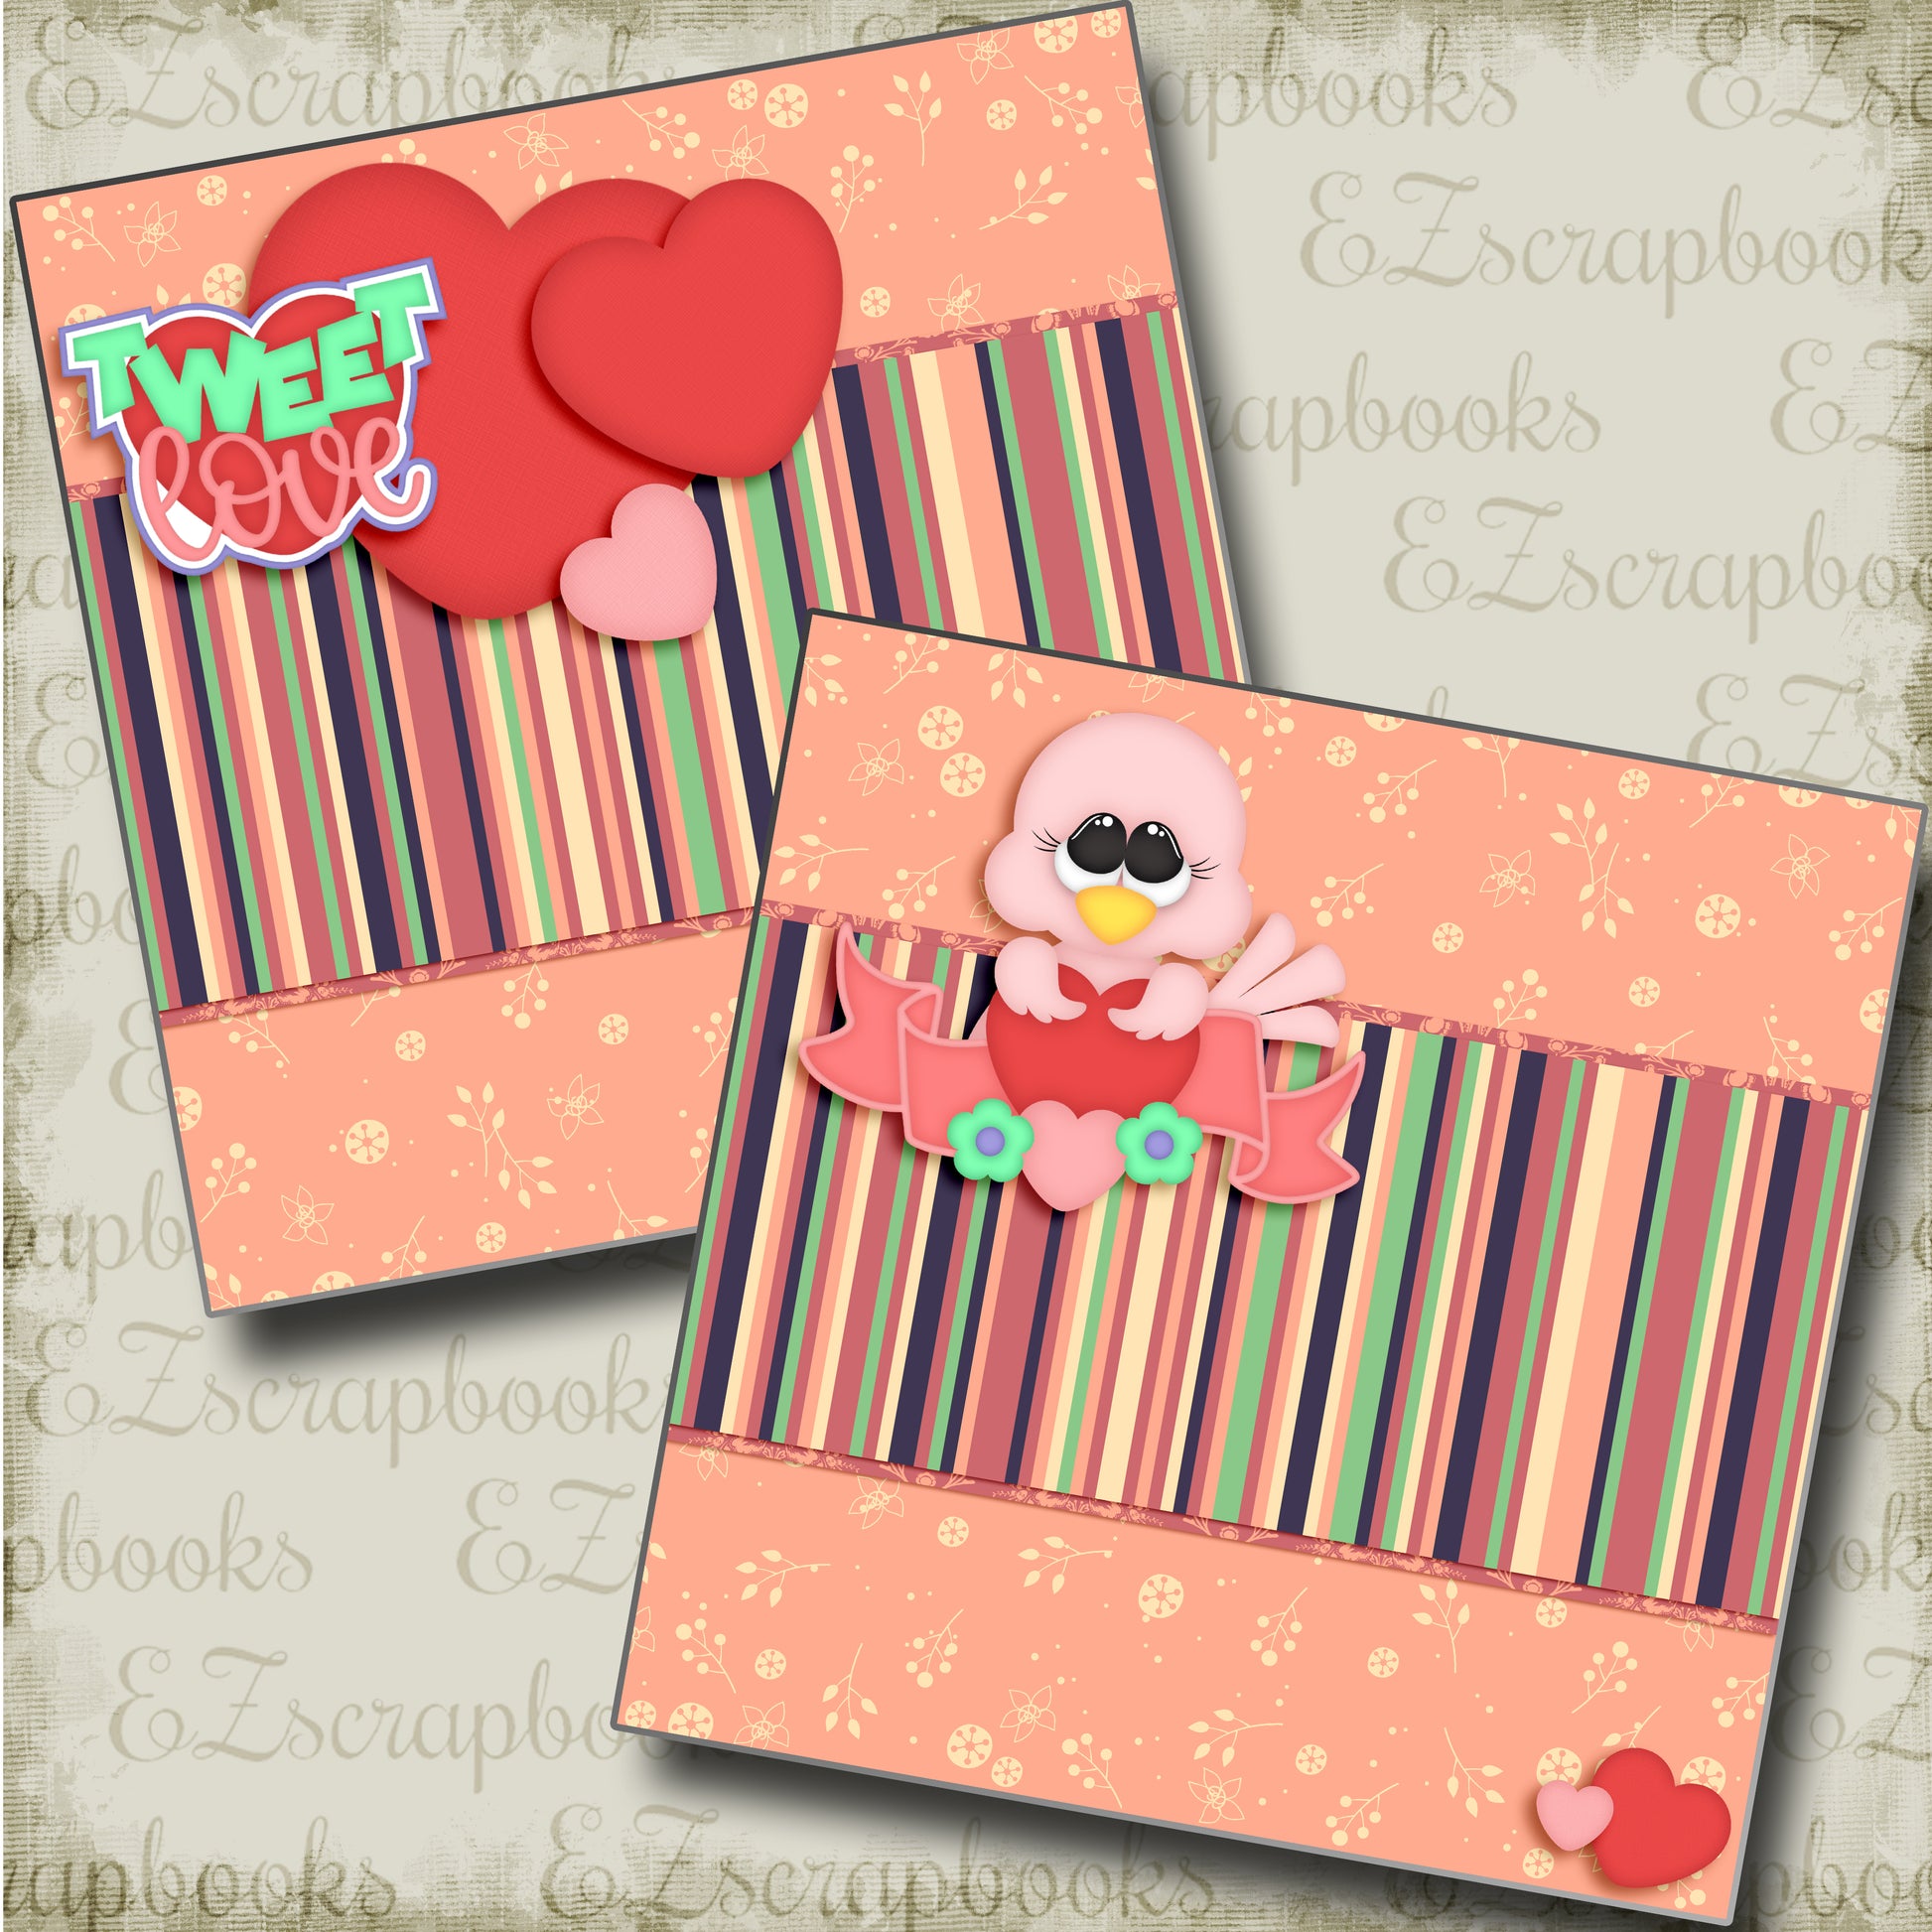 Tweet Love NPM - 3771 - EZscrapbooks Scrapbook Layouts Love - Valentine